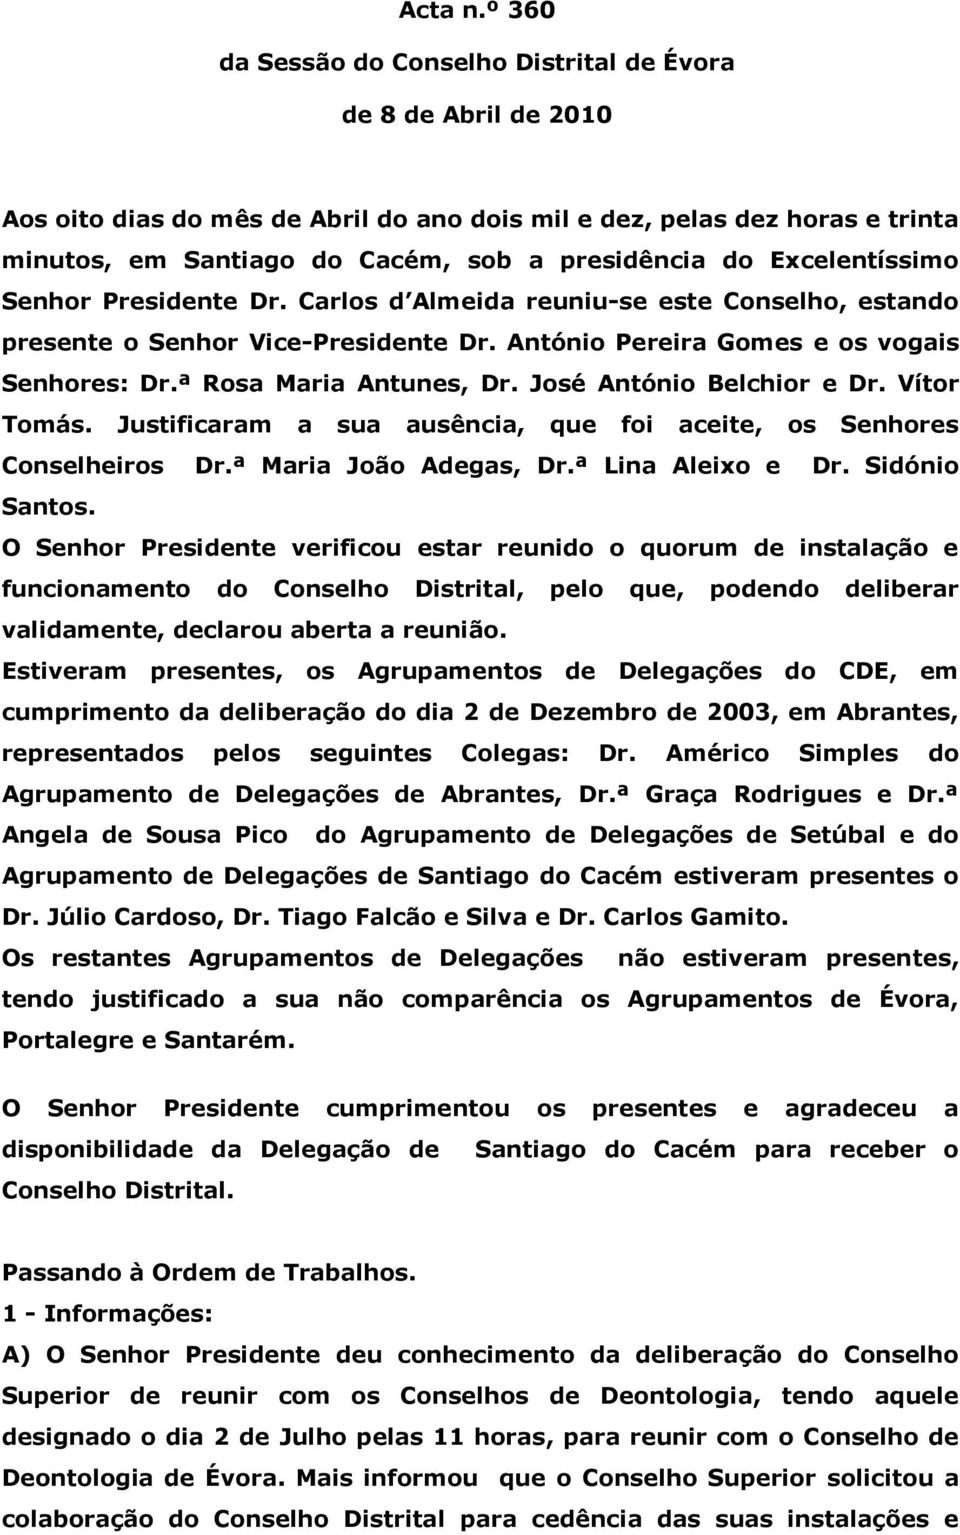 Excelentíssimo Senhor Presidente Dr. Carlos d Almeida reuniu-se este Conselho, estando presente o Senhor Vice-Presidente Dr. António Pereira Gomes e os vogais Senhores: Dr.ª Rosa Maria Antunes, Dr.